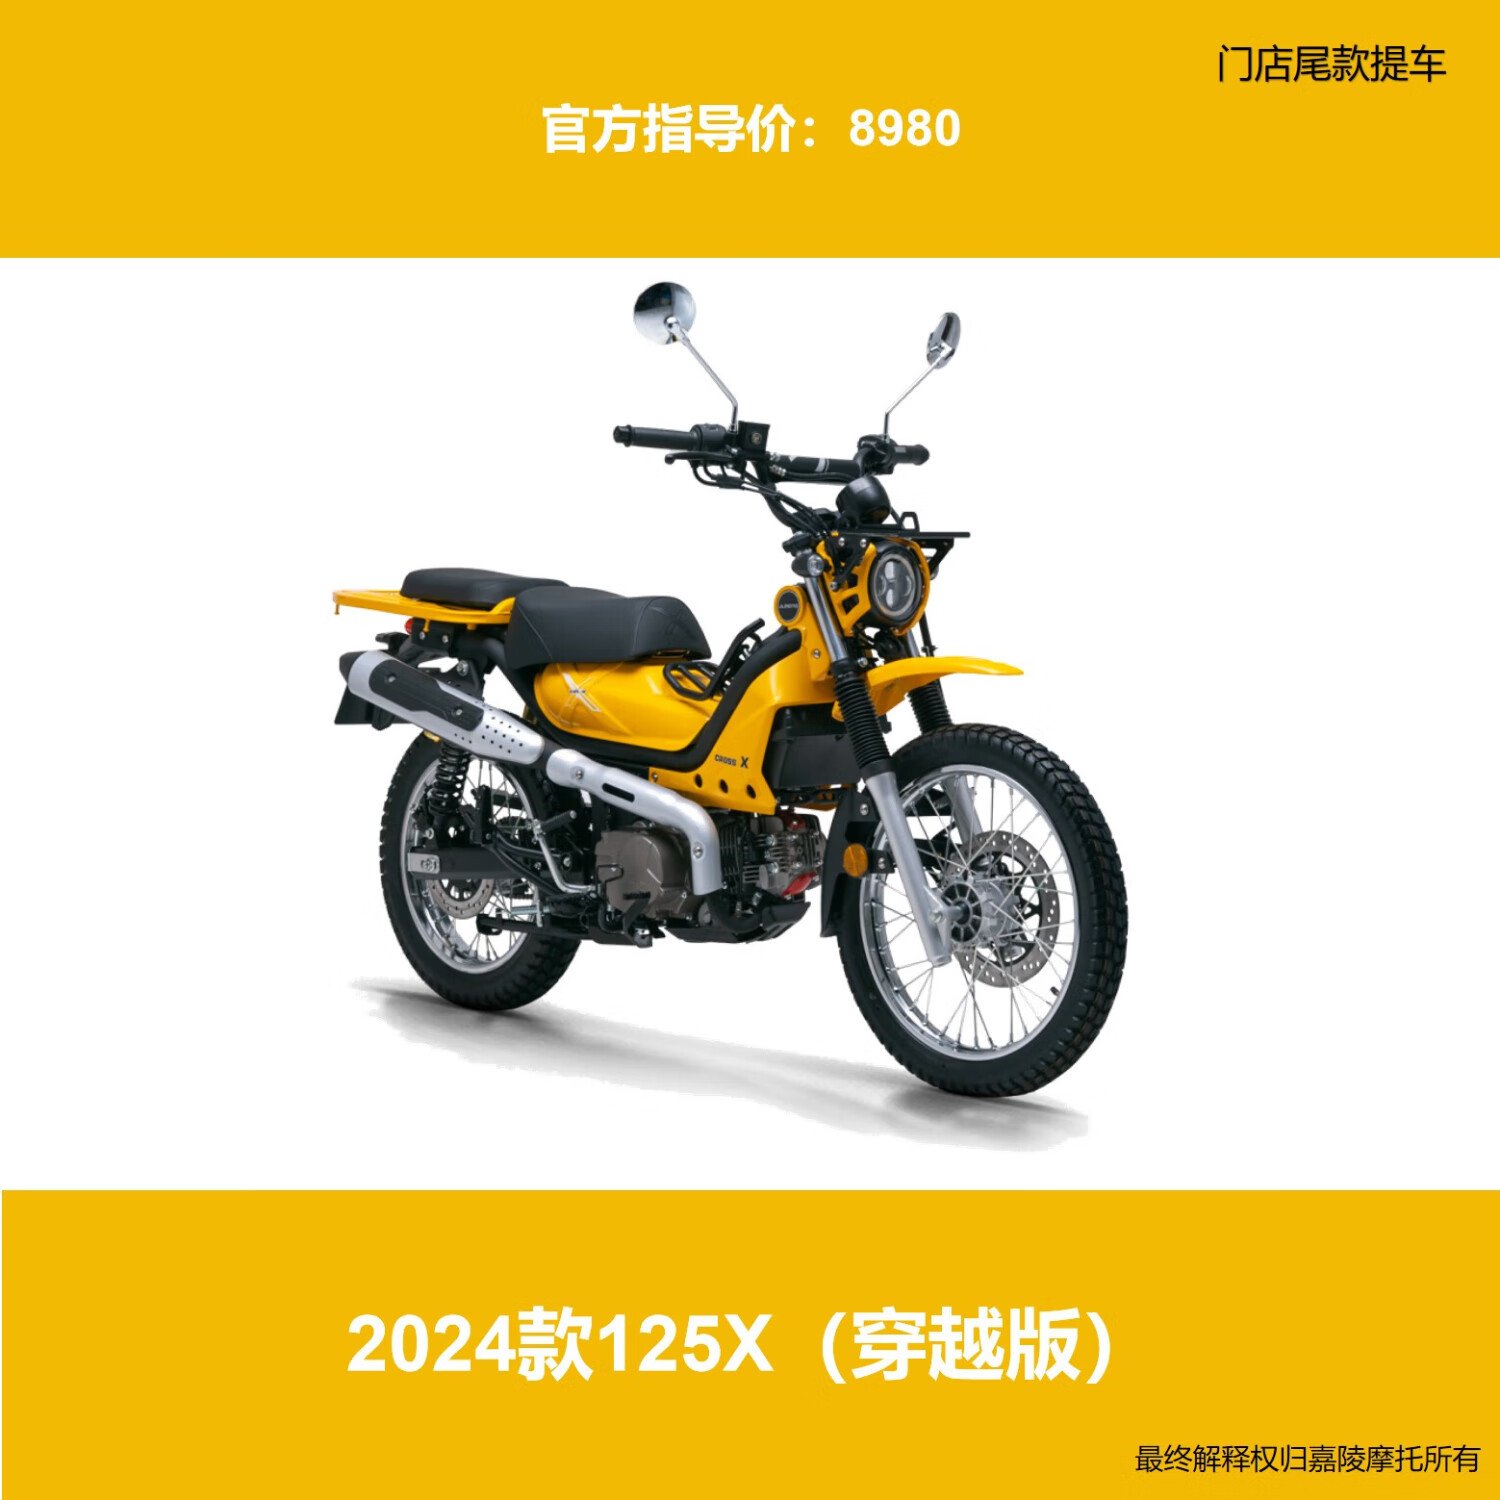 JIALING 嘉陵工业 摩托车整车 优惠商品 397元（需用券）